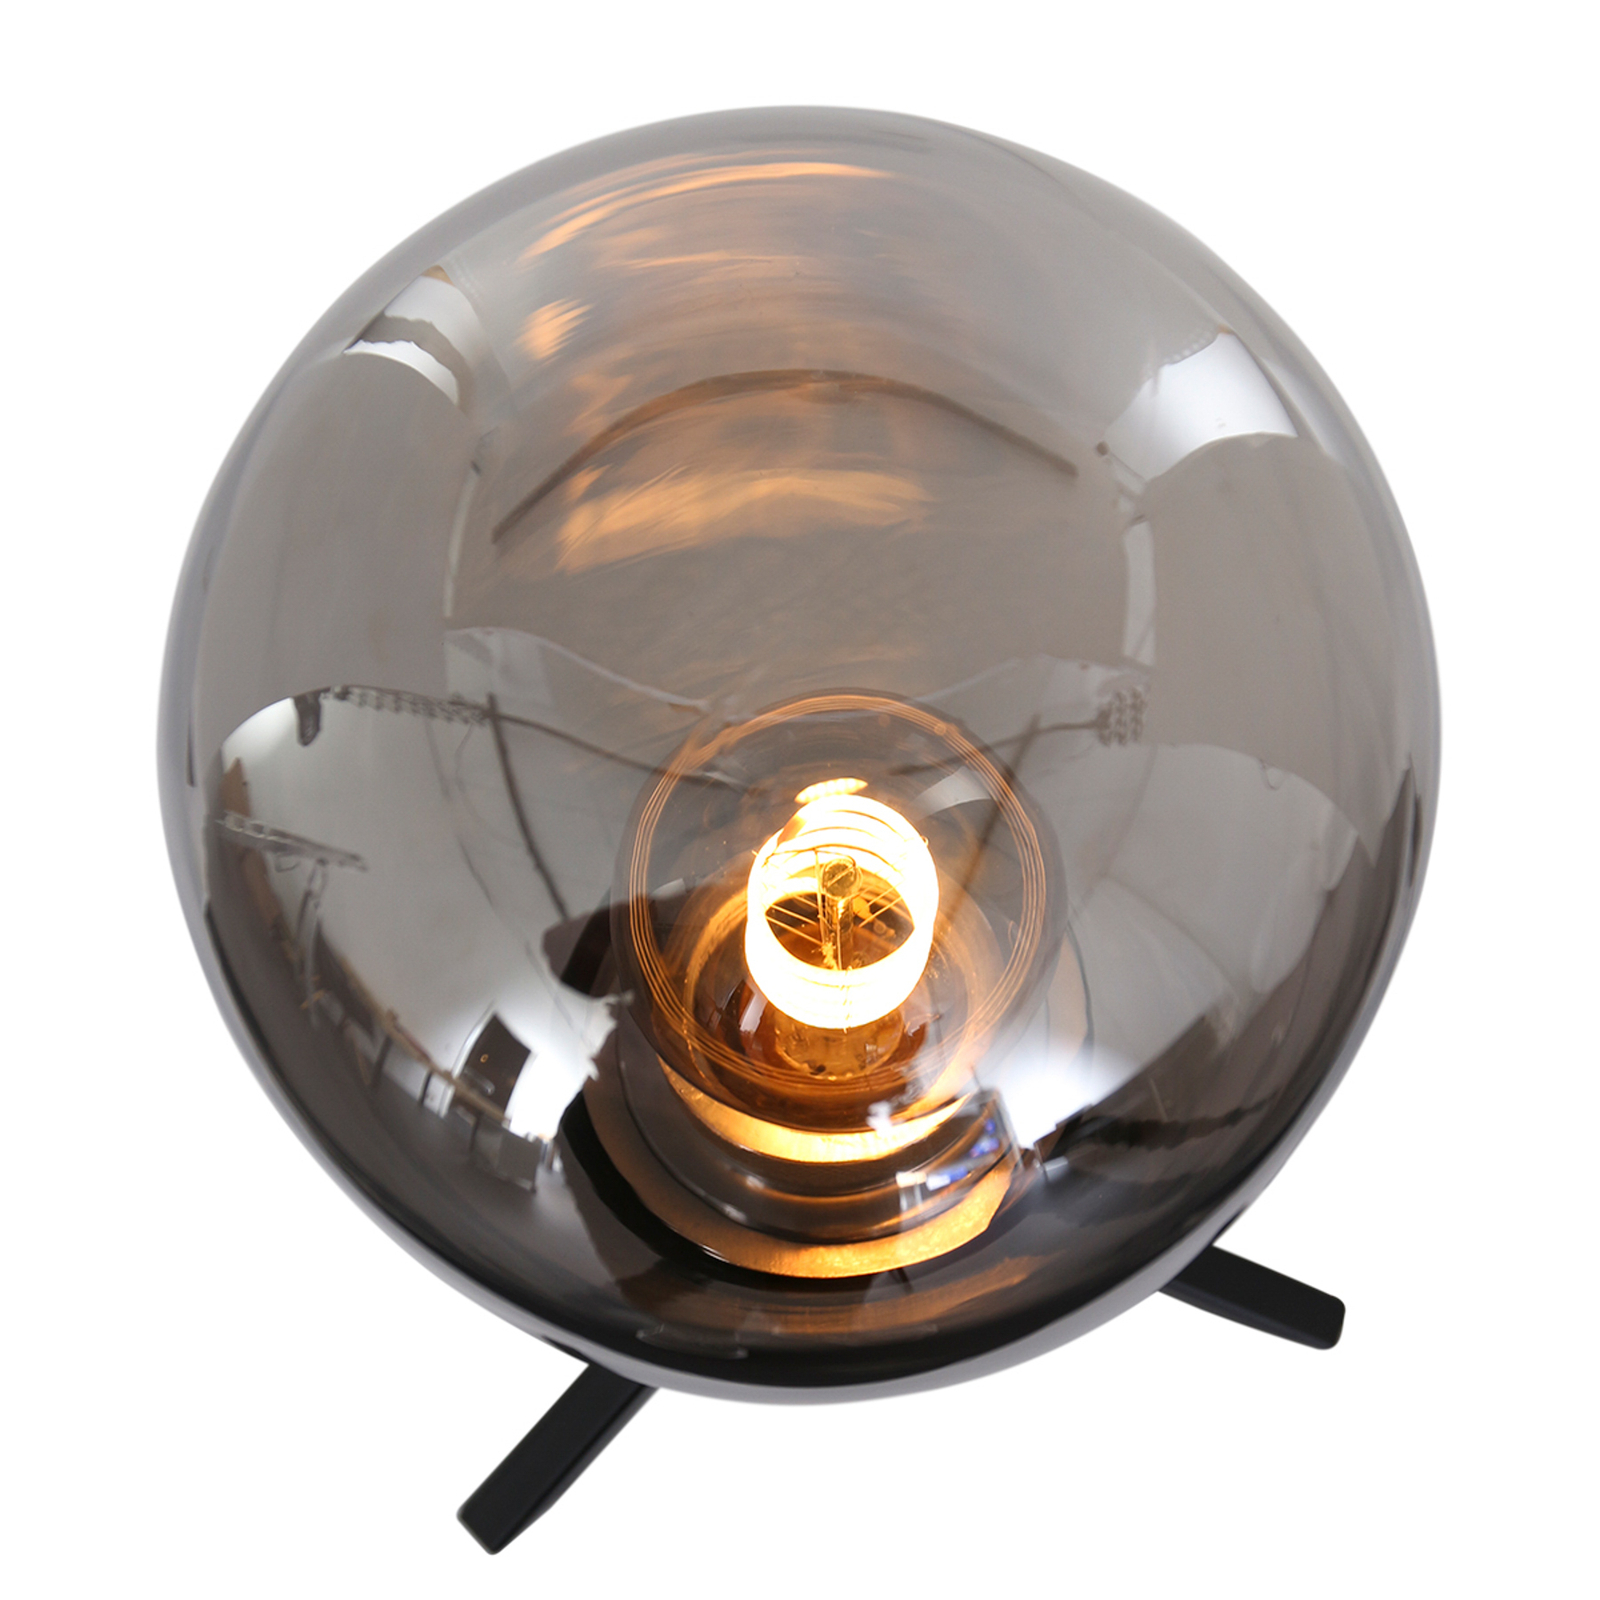 Stolová lampa Reflexion, Ø 15 cm, výška 28 cm